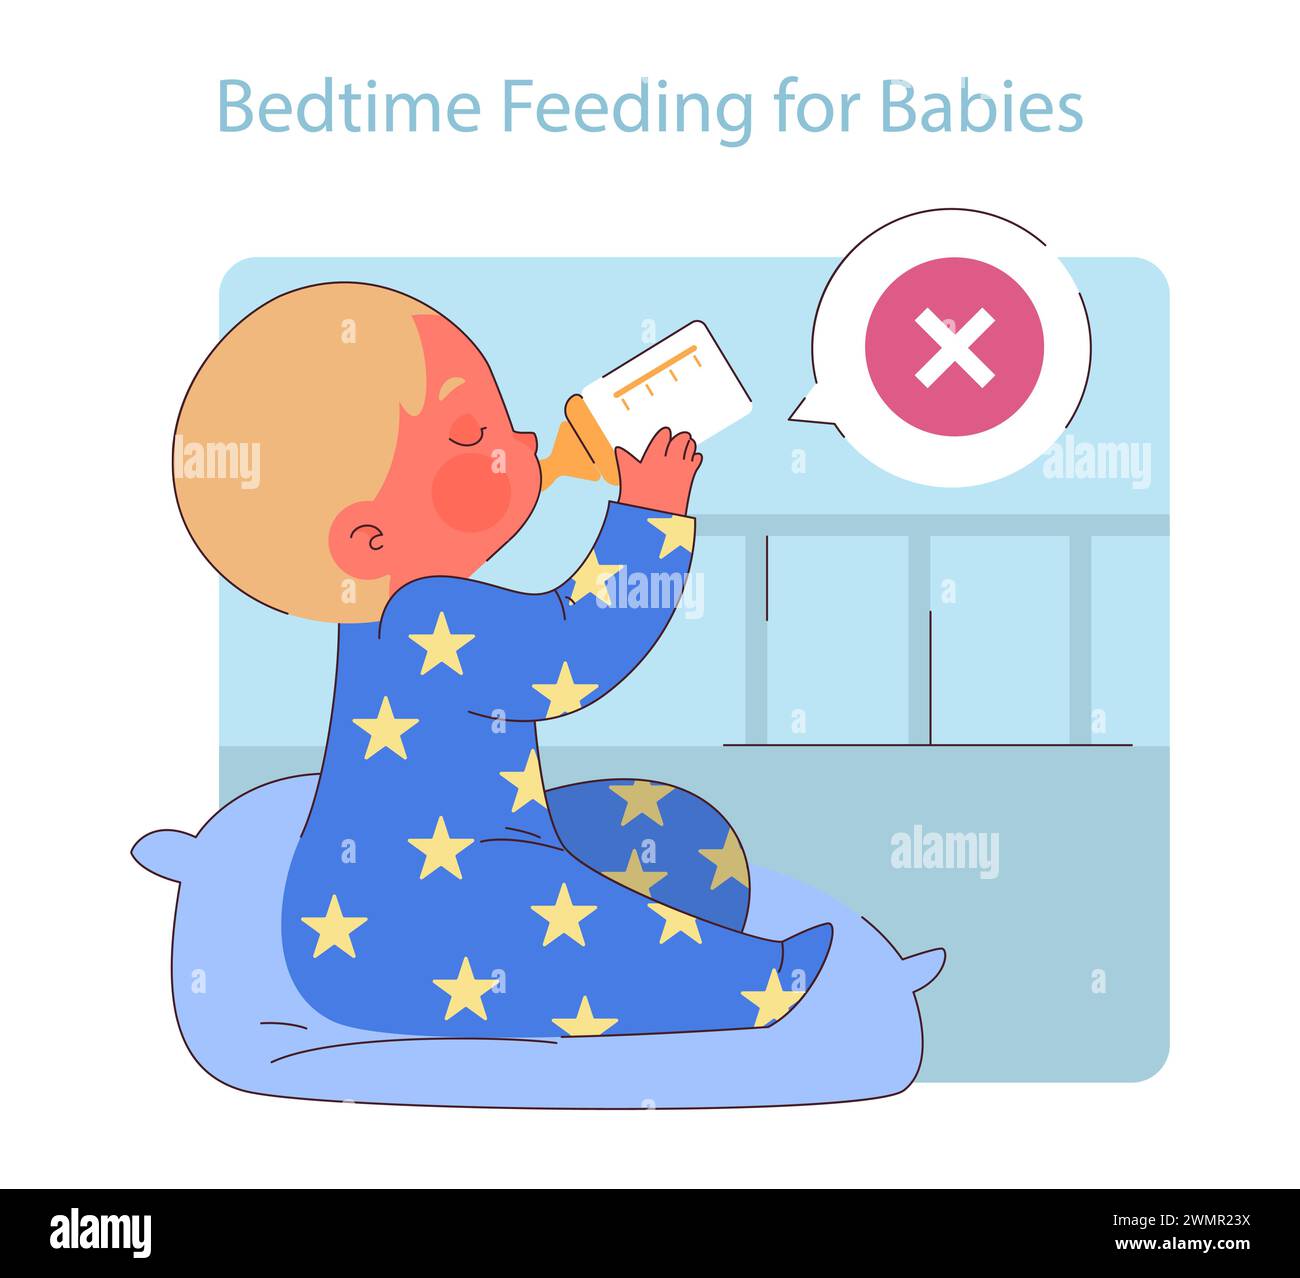 L'alimentation des bébés au coucher. Illustration mettant en évidence les risques des biberons nocturnes, favorisant la sensibilisation à la santé bucco-dentaire dès la petite enfance. Illustration de Vecteur